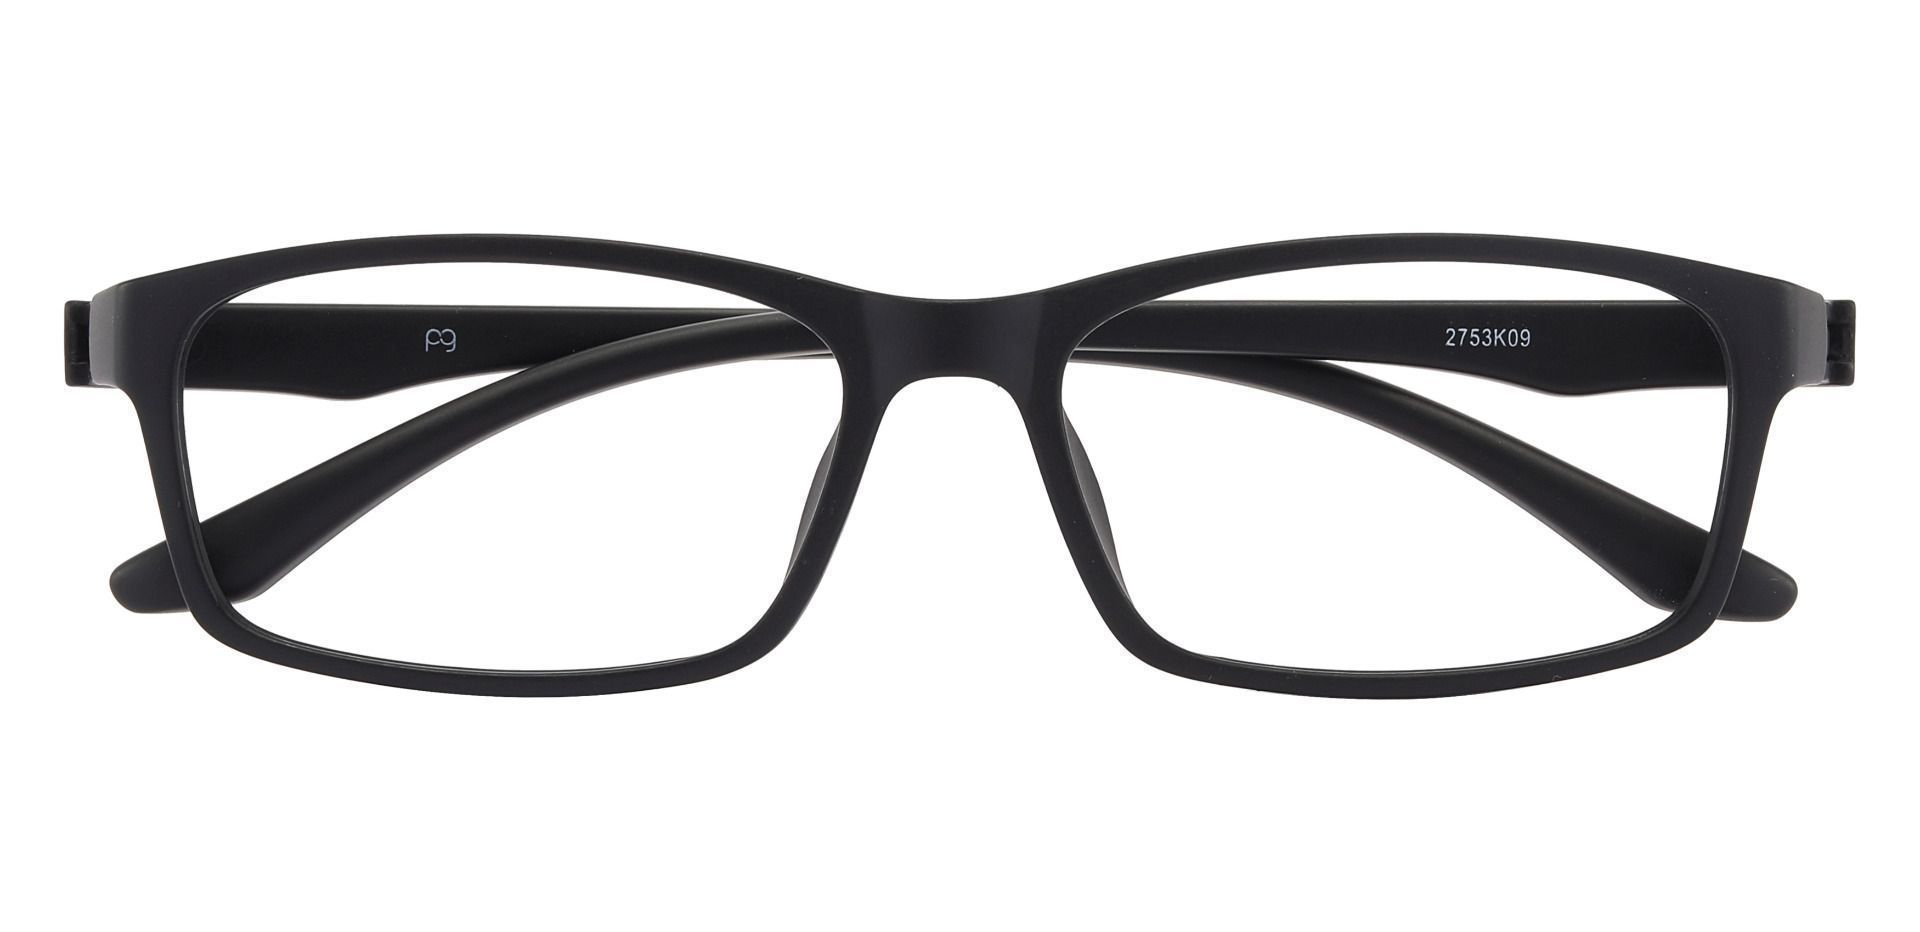 Poplar Rectangle Non-Rx Glasses -   Matte Black     